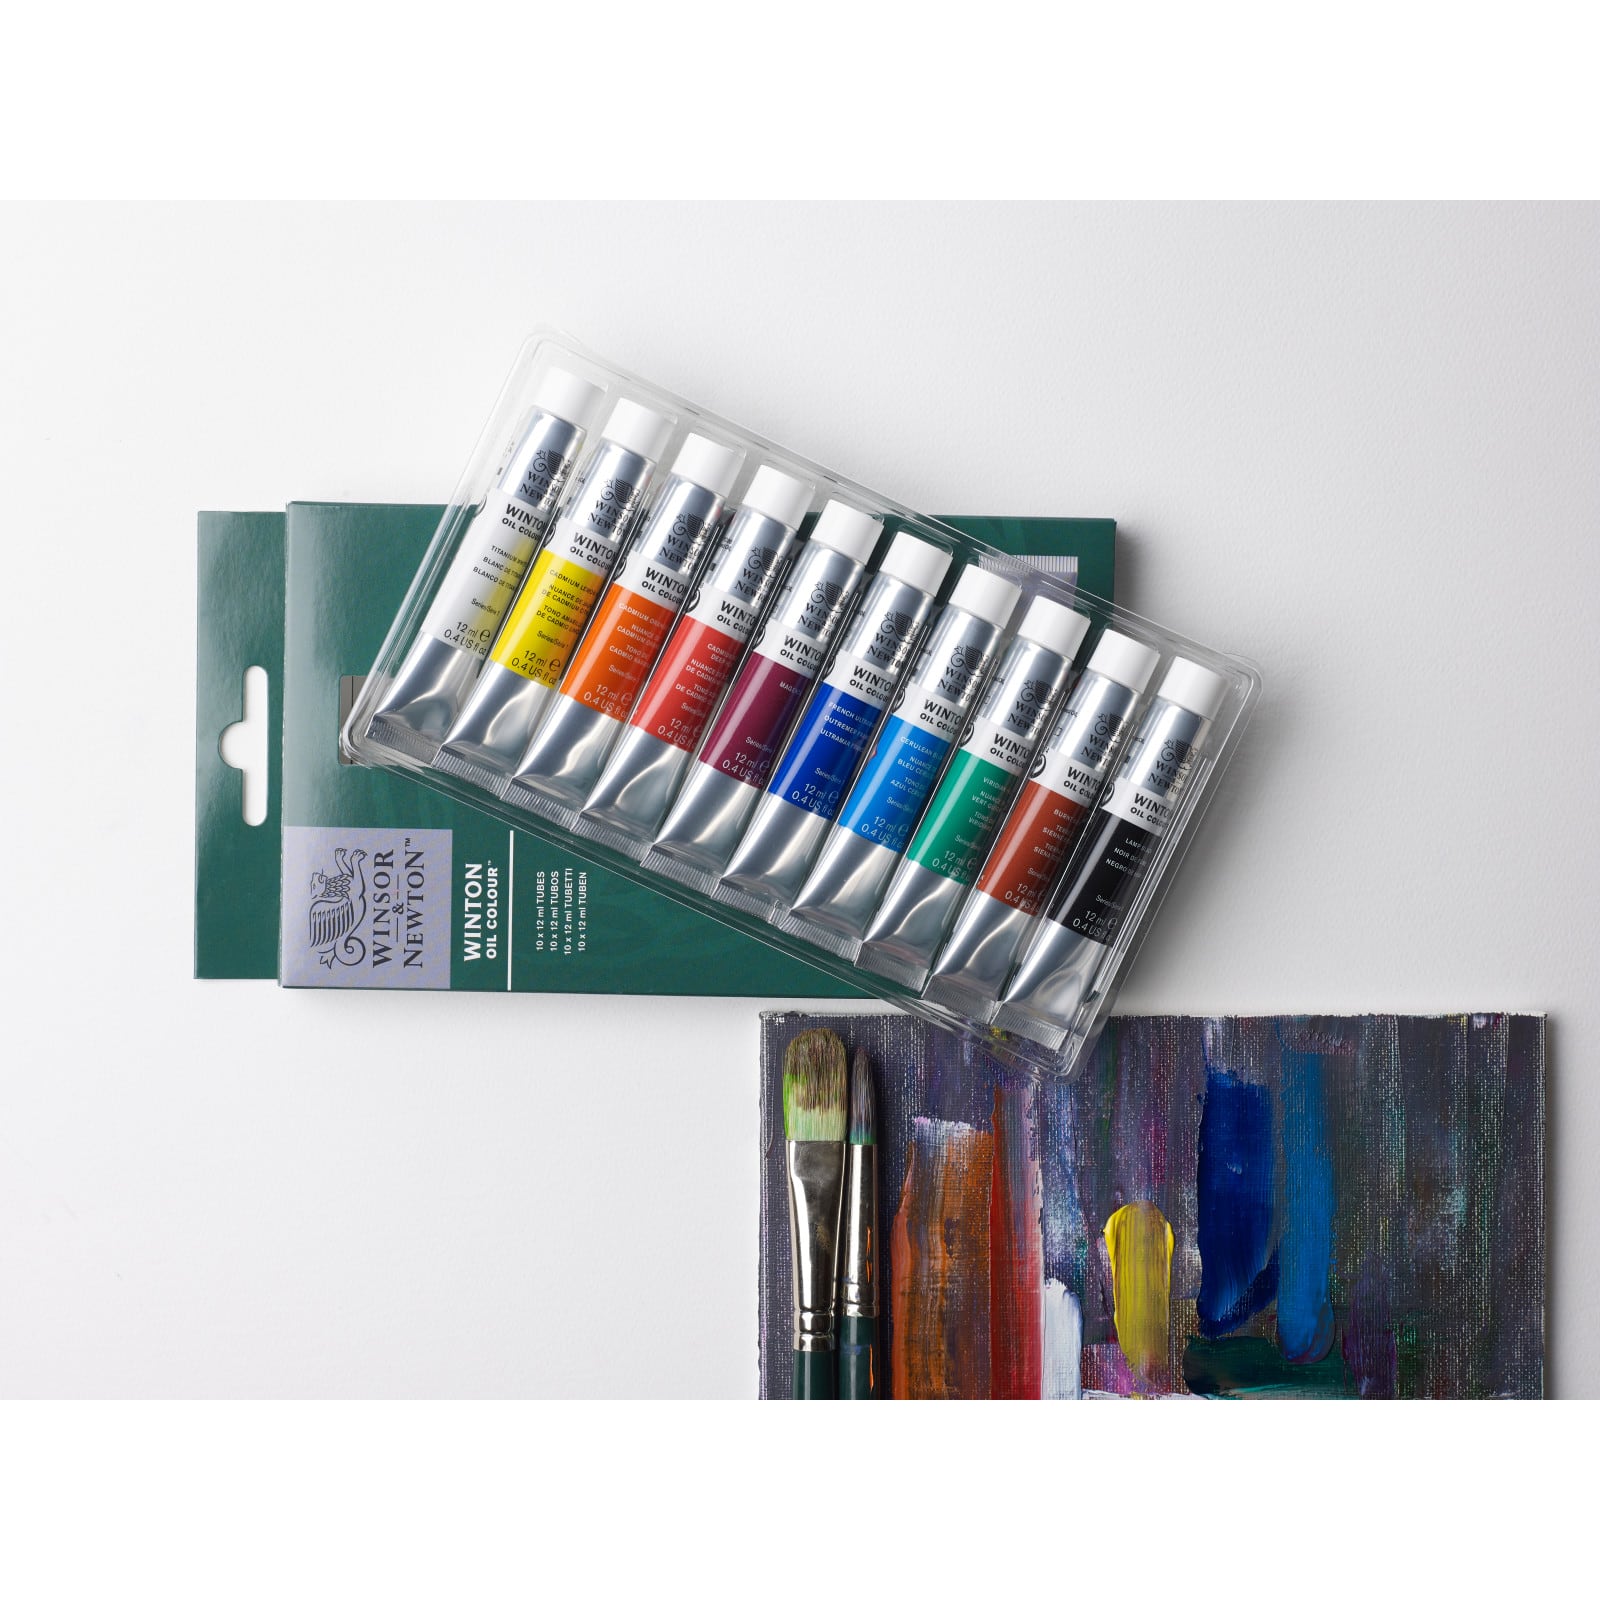 Winsor &#x26; Newton&#x2122; Winton Oil Colour&#x2122; 10 Color Paint Set